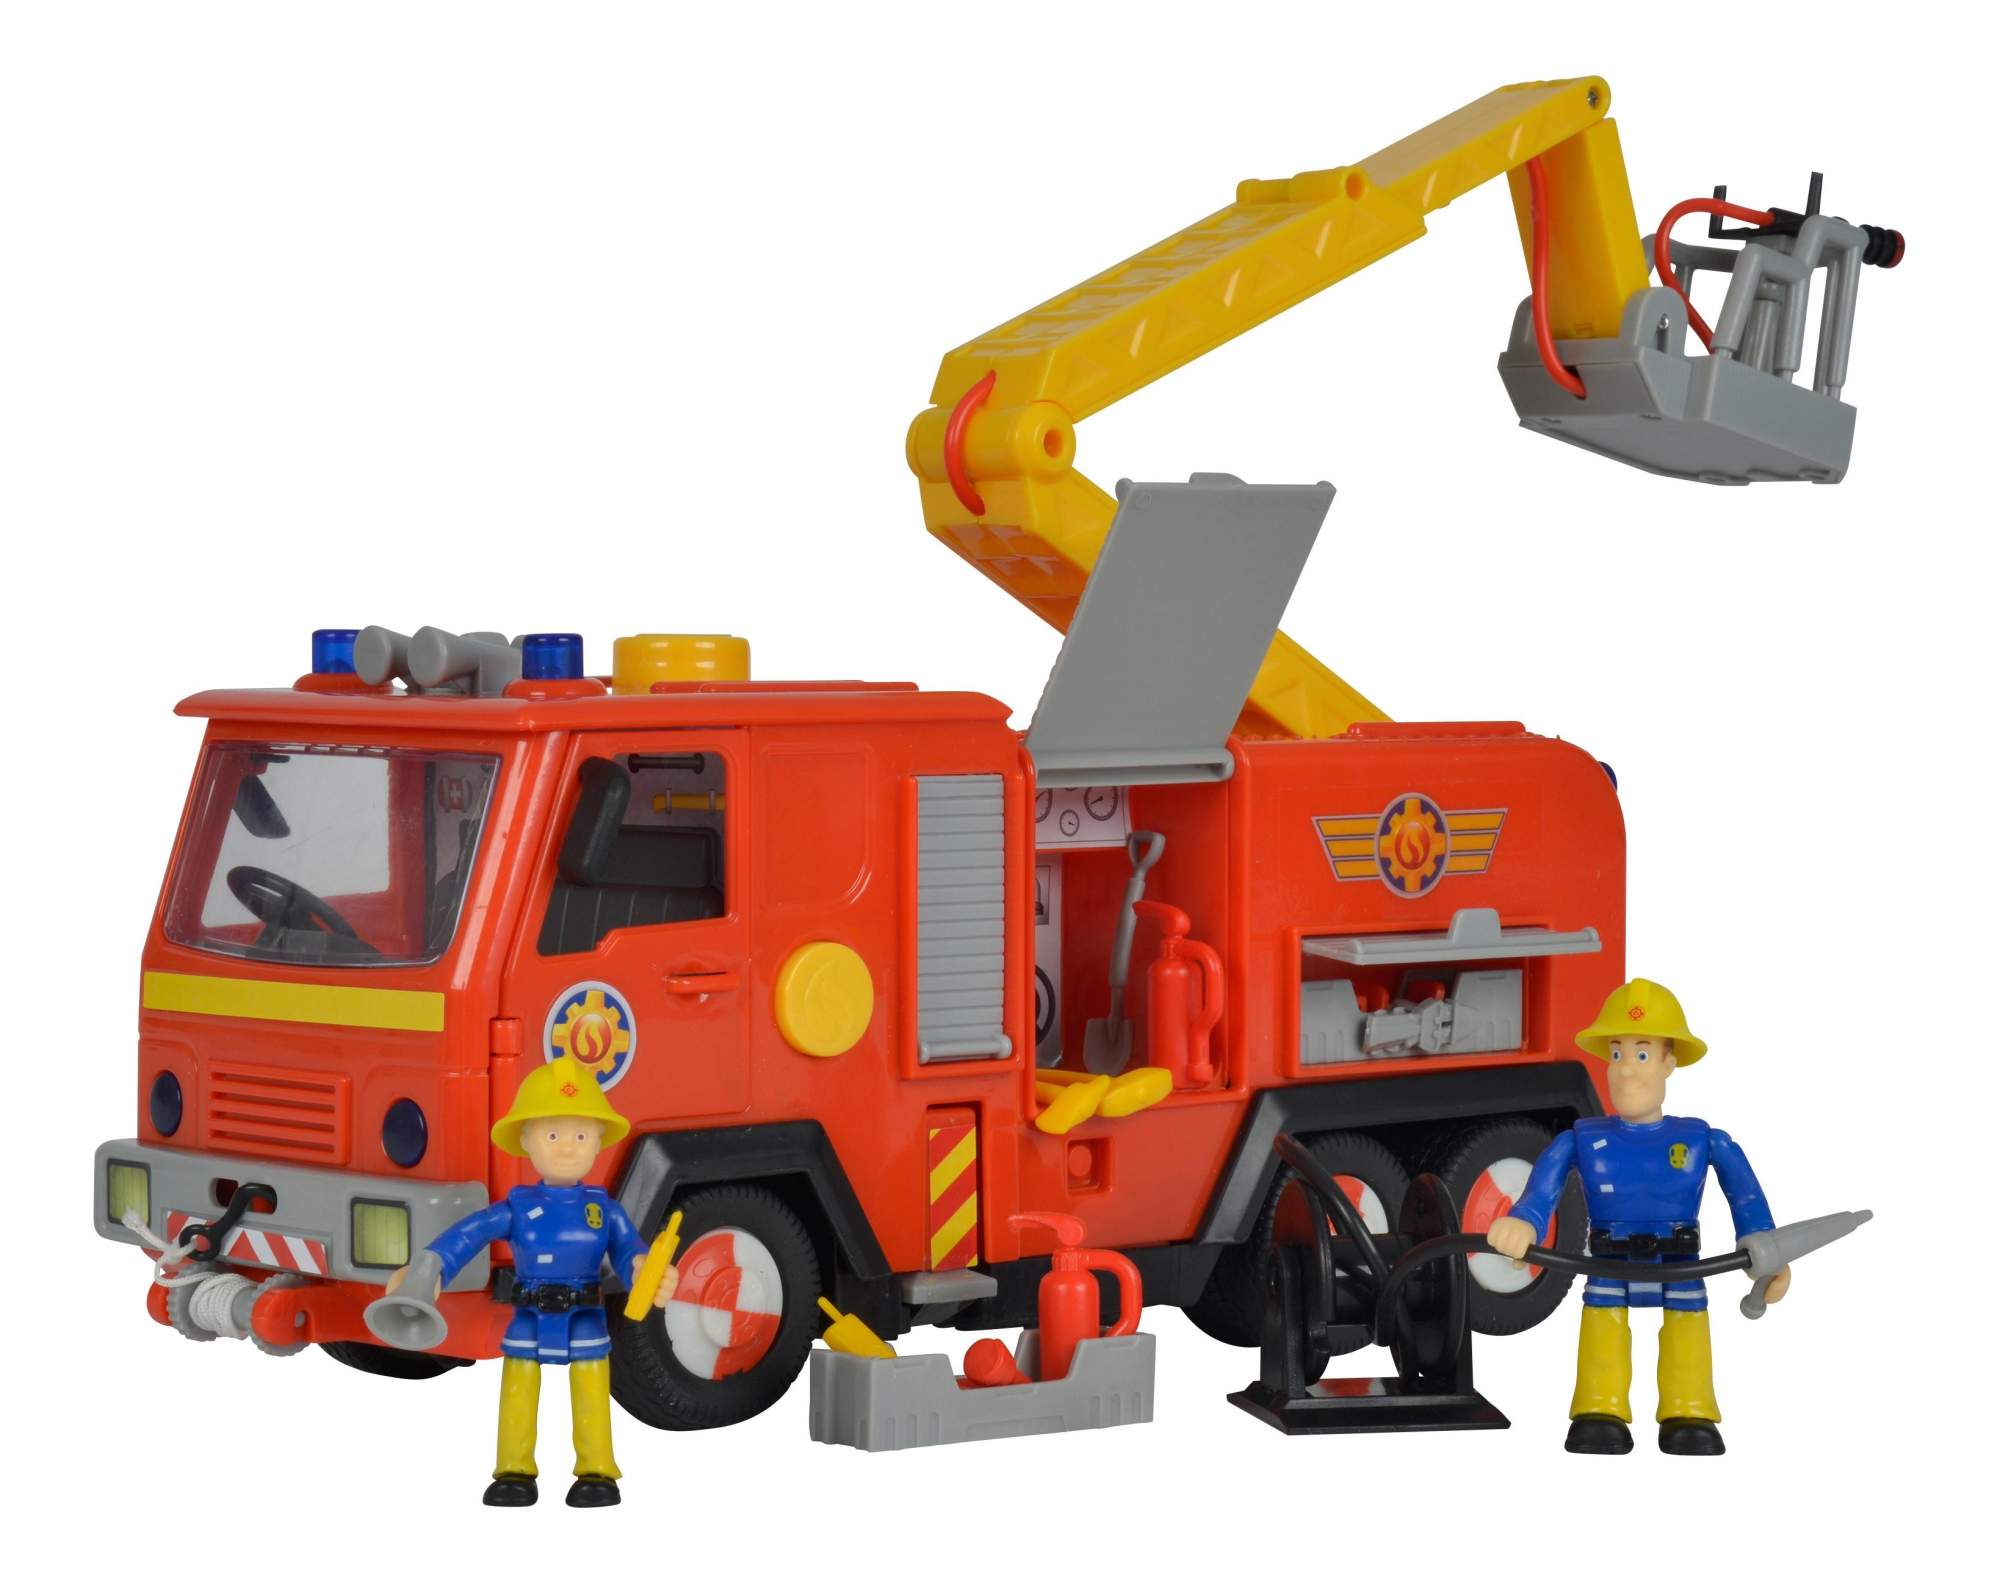 Купить игрушку пожарный. Пожарная машина Simba пожарный Сэм. Simba пожарная машина Deluxe Jupiter. Игровой набор Simba Fireman Sam Deluxe Jupiter 9257661. Игровой набор Simba Fireman Sam 9257651.